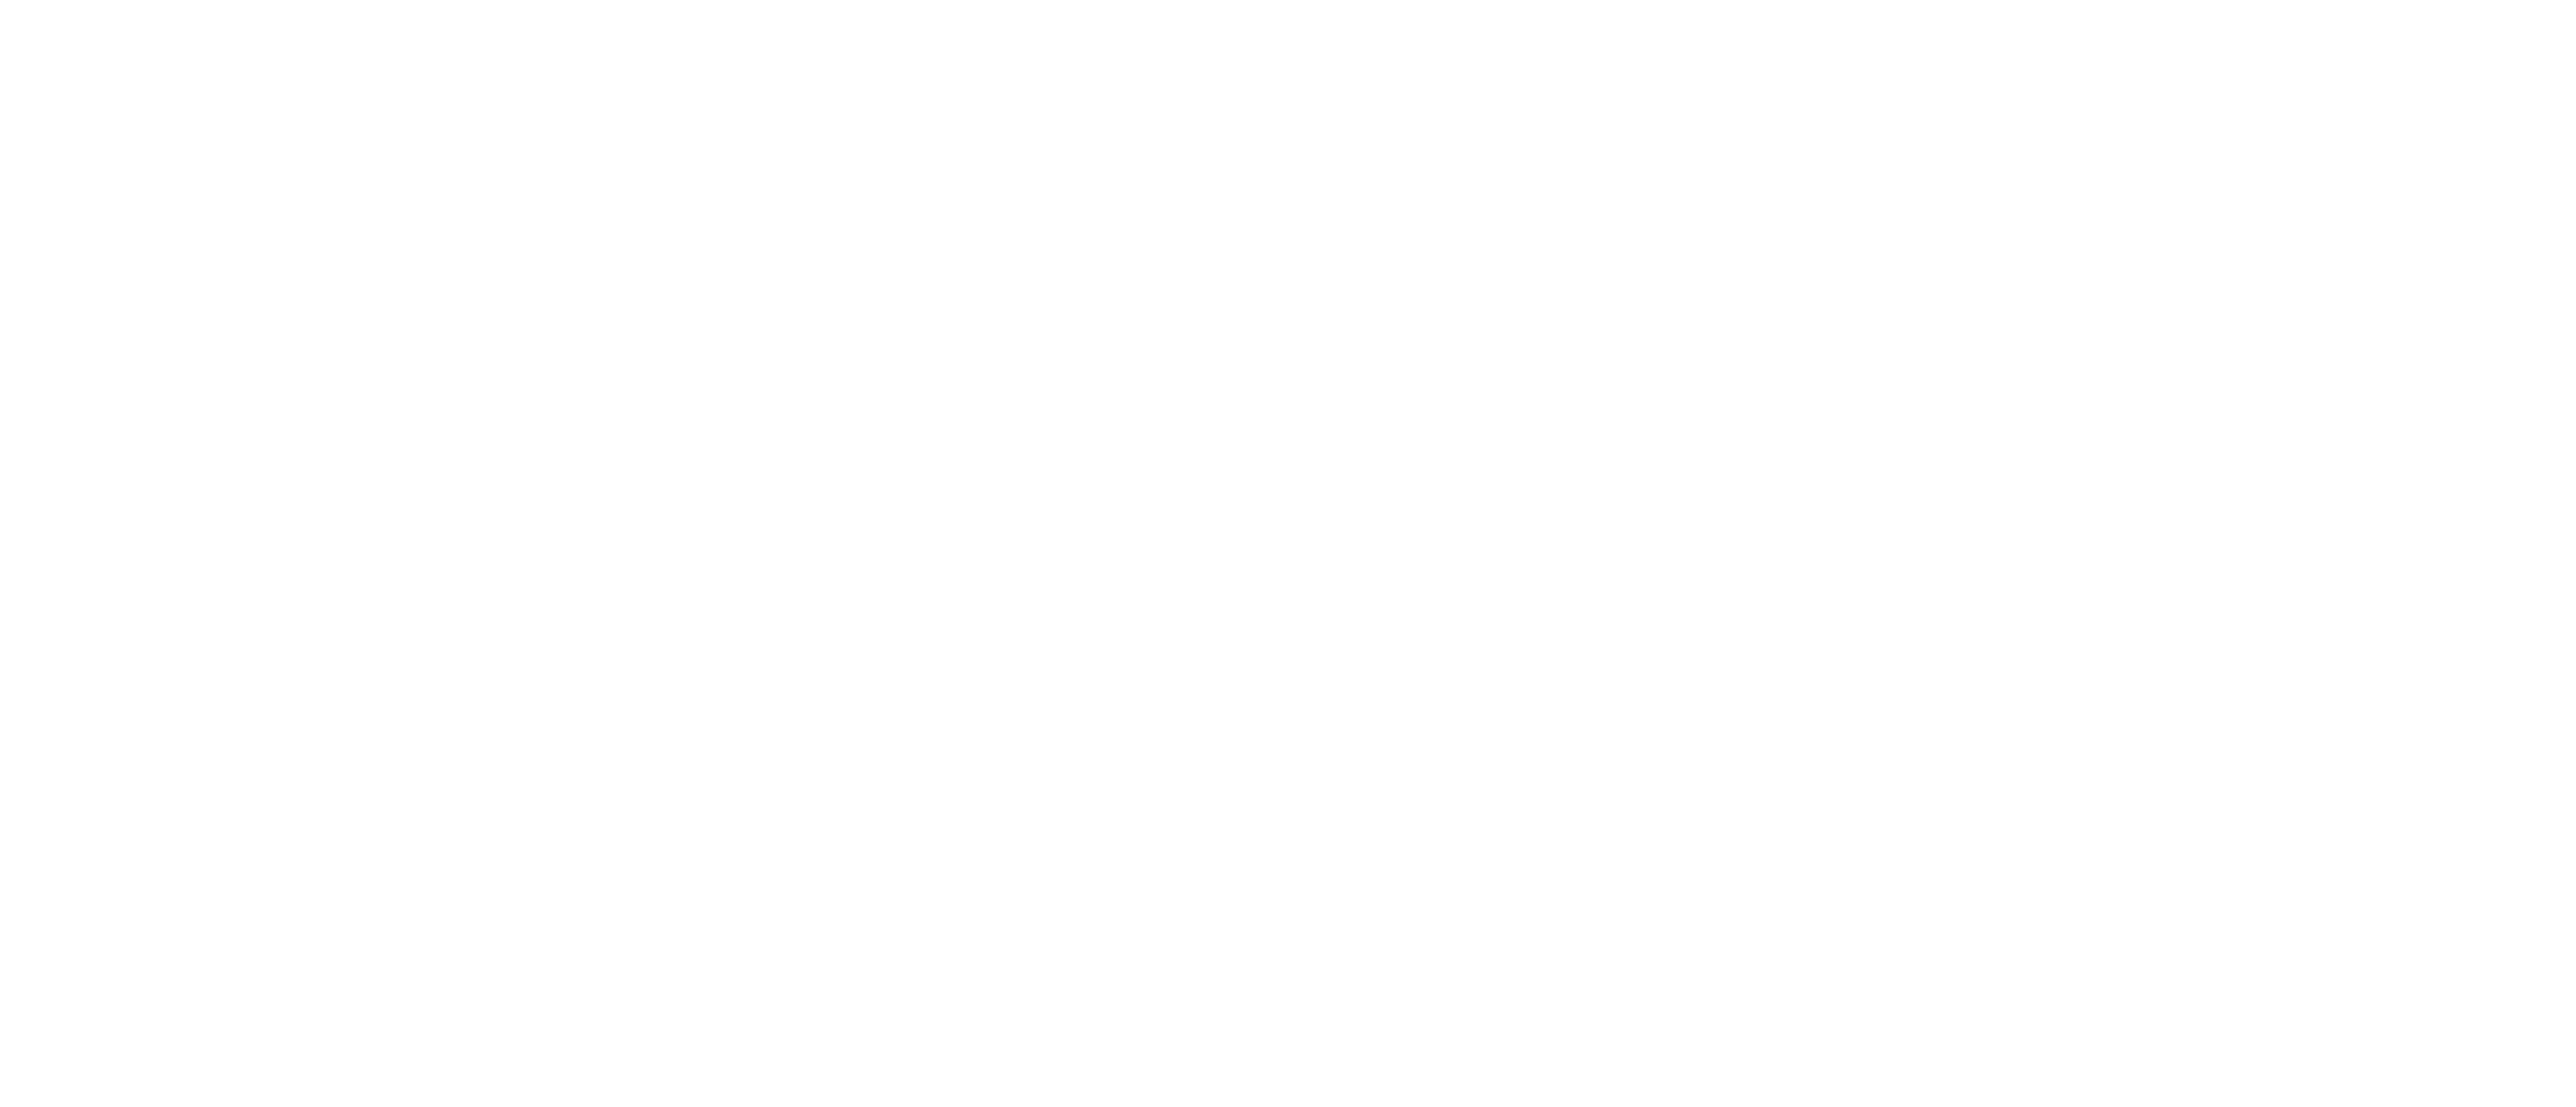 PAUL Logo